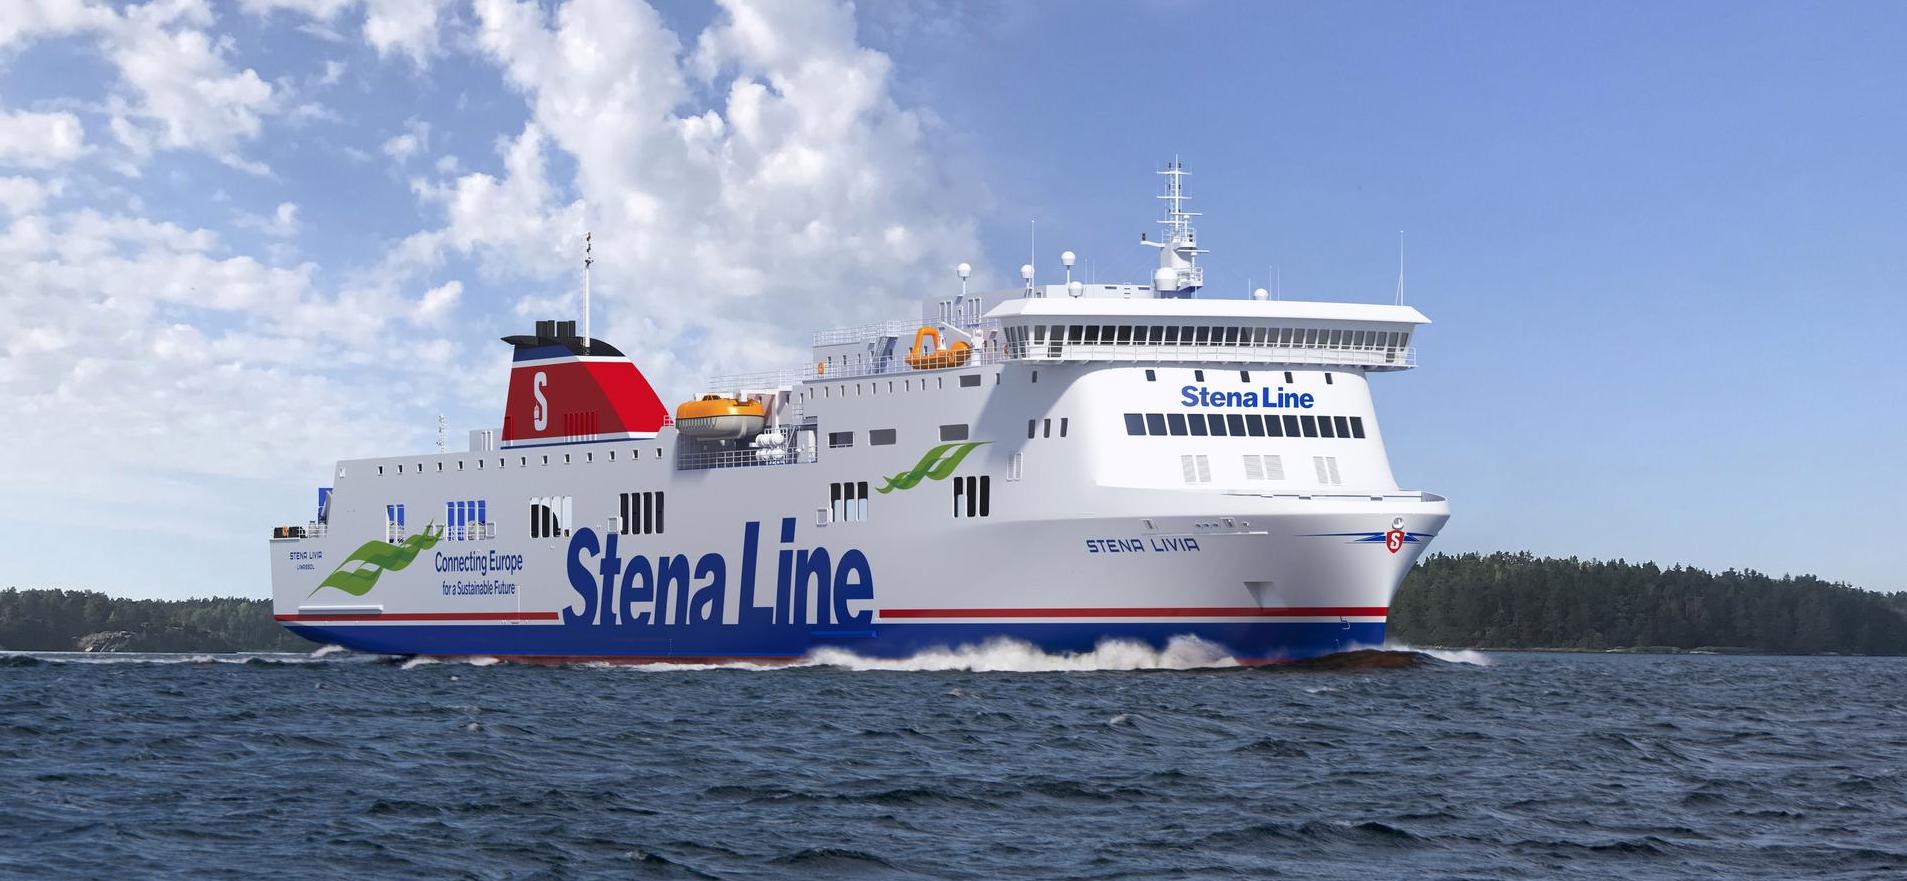 Zdjęcie statku Stena Line - Stena Livia